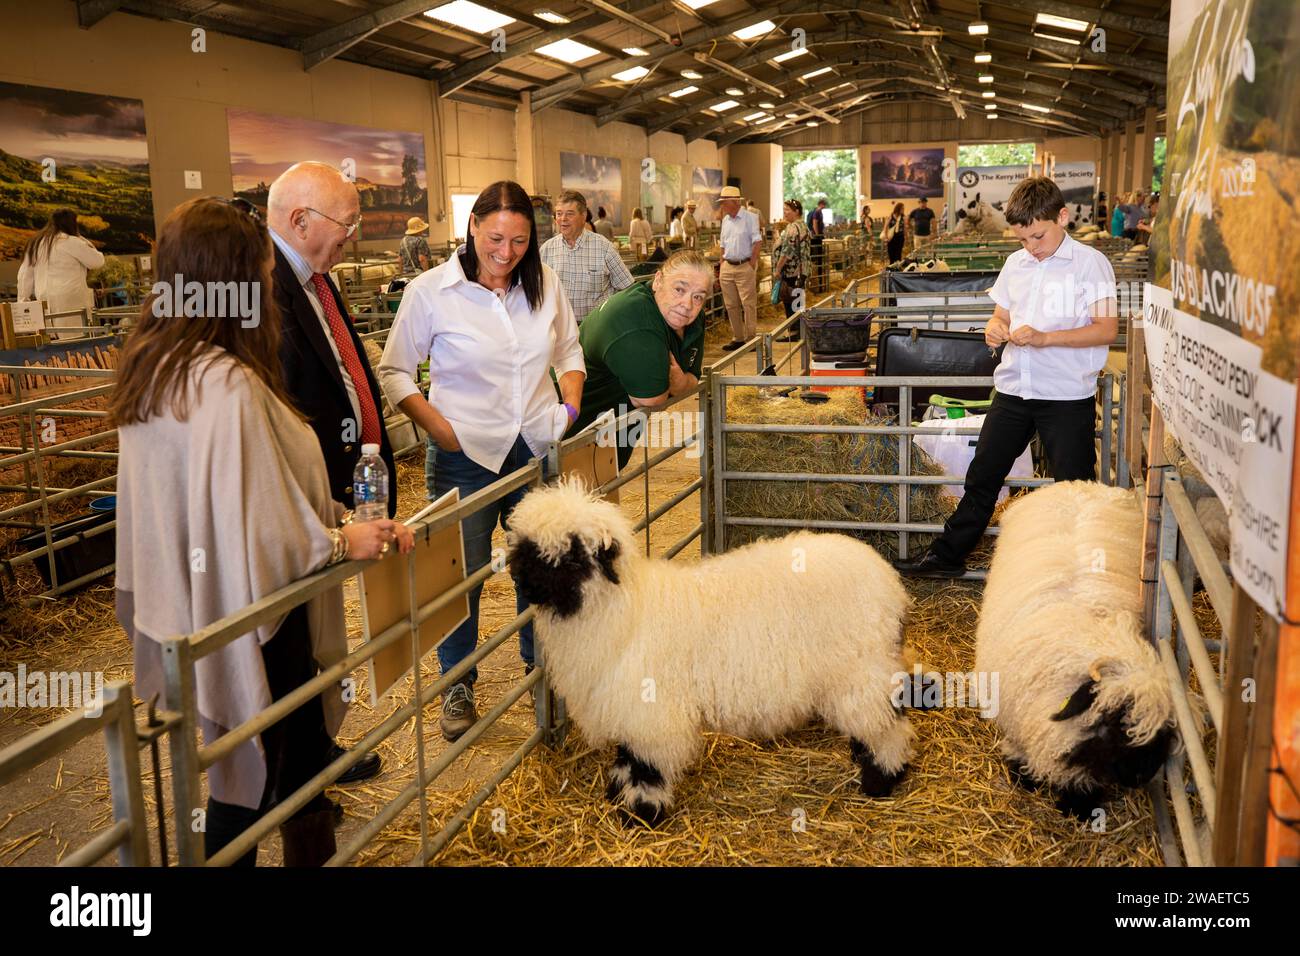 Regno Unito, Inghilterra, Worcestershire, Malvern Wells, Royal 3 Counties Show, Valais Blacknose pecore del gregge di Sammia Shail da Birtmorton, Malvern al coperto Foto Stock